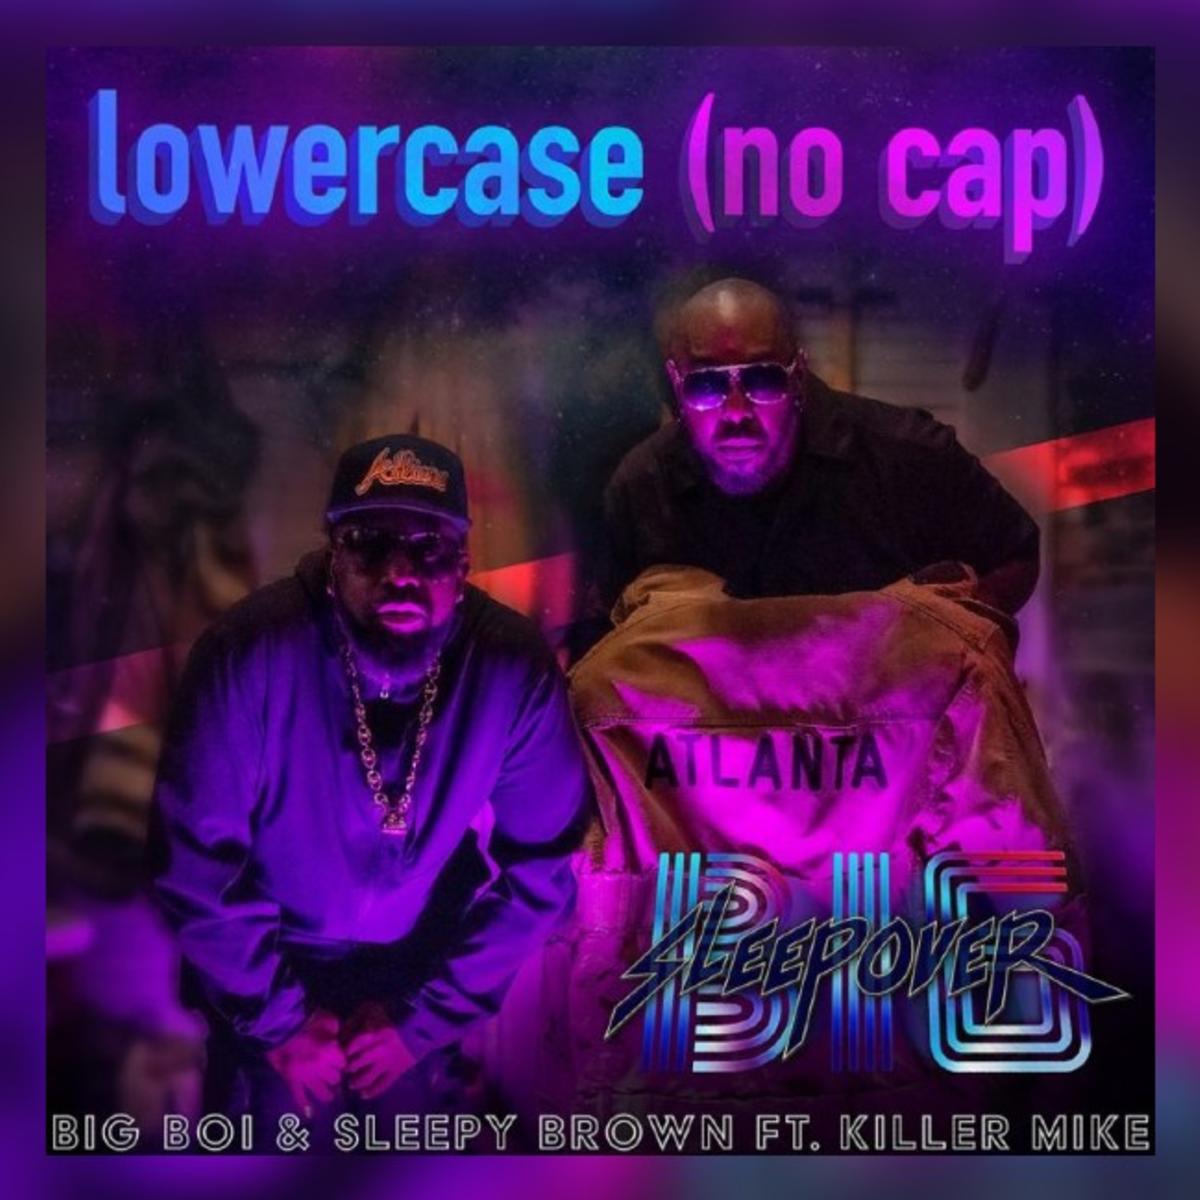 Big Boi, Sleepy Brown & Killer Mike Reunite For “Lowercase (No Cap)”